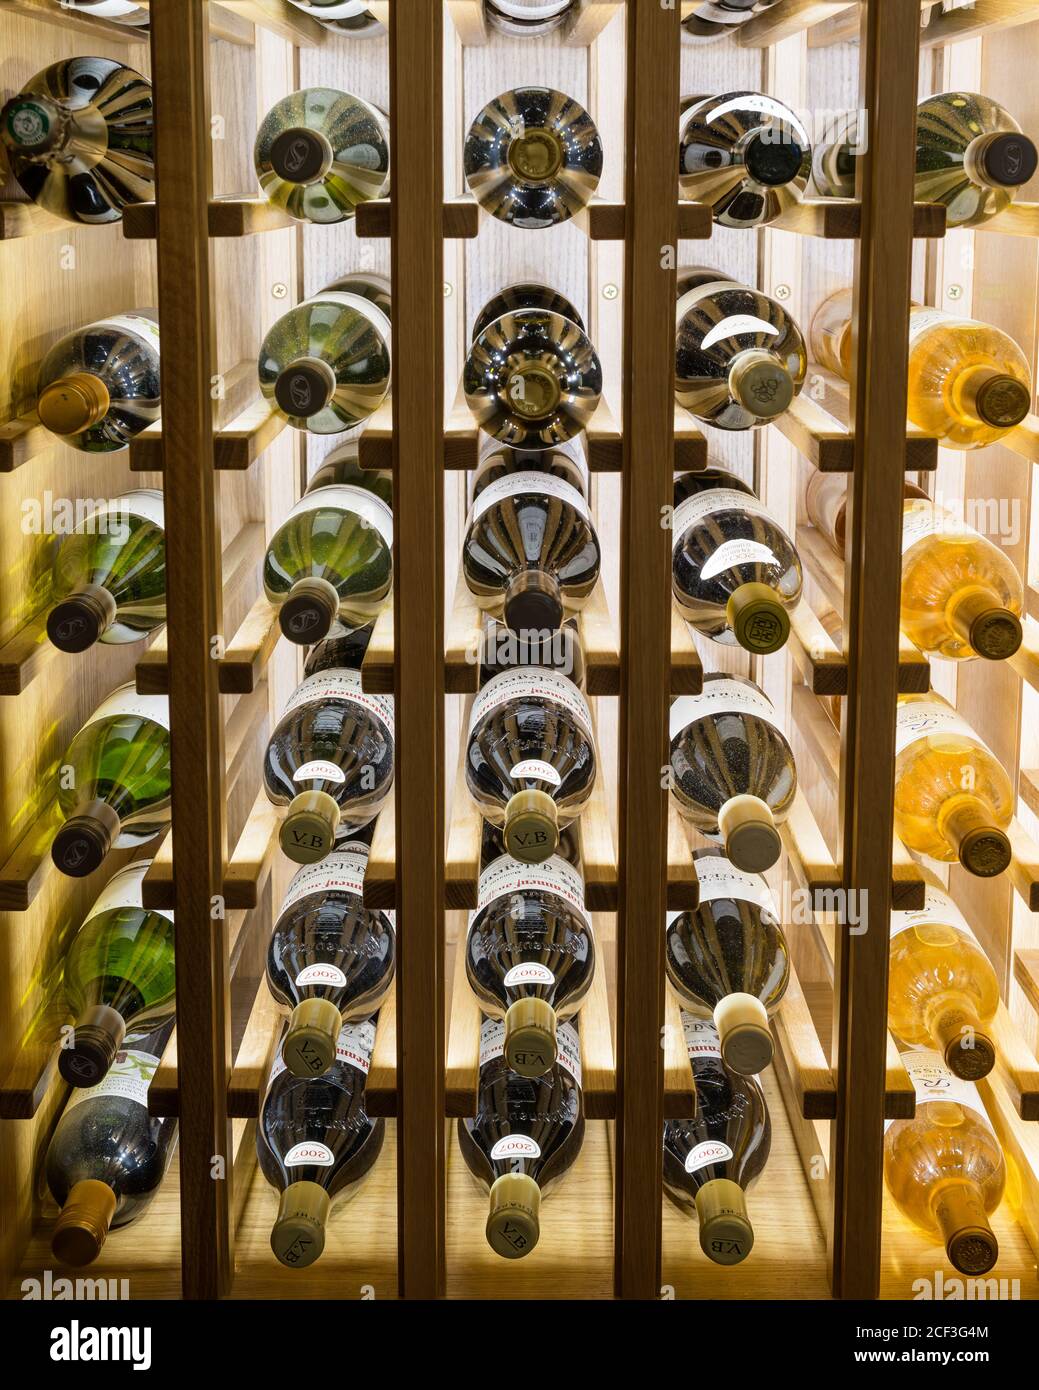 Wine bottles on shelves Stock Photo